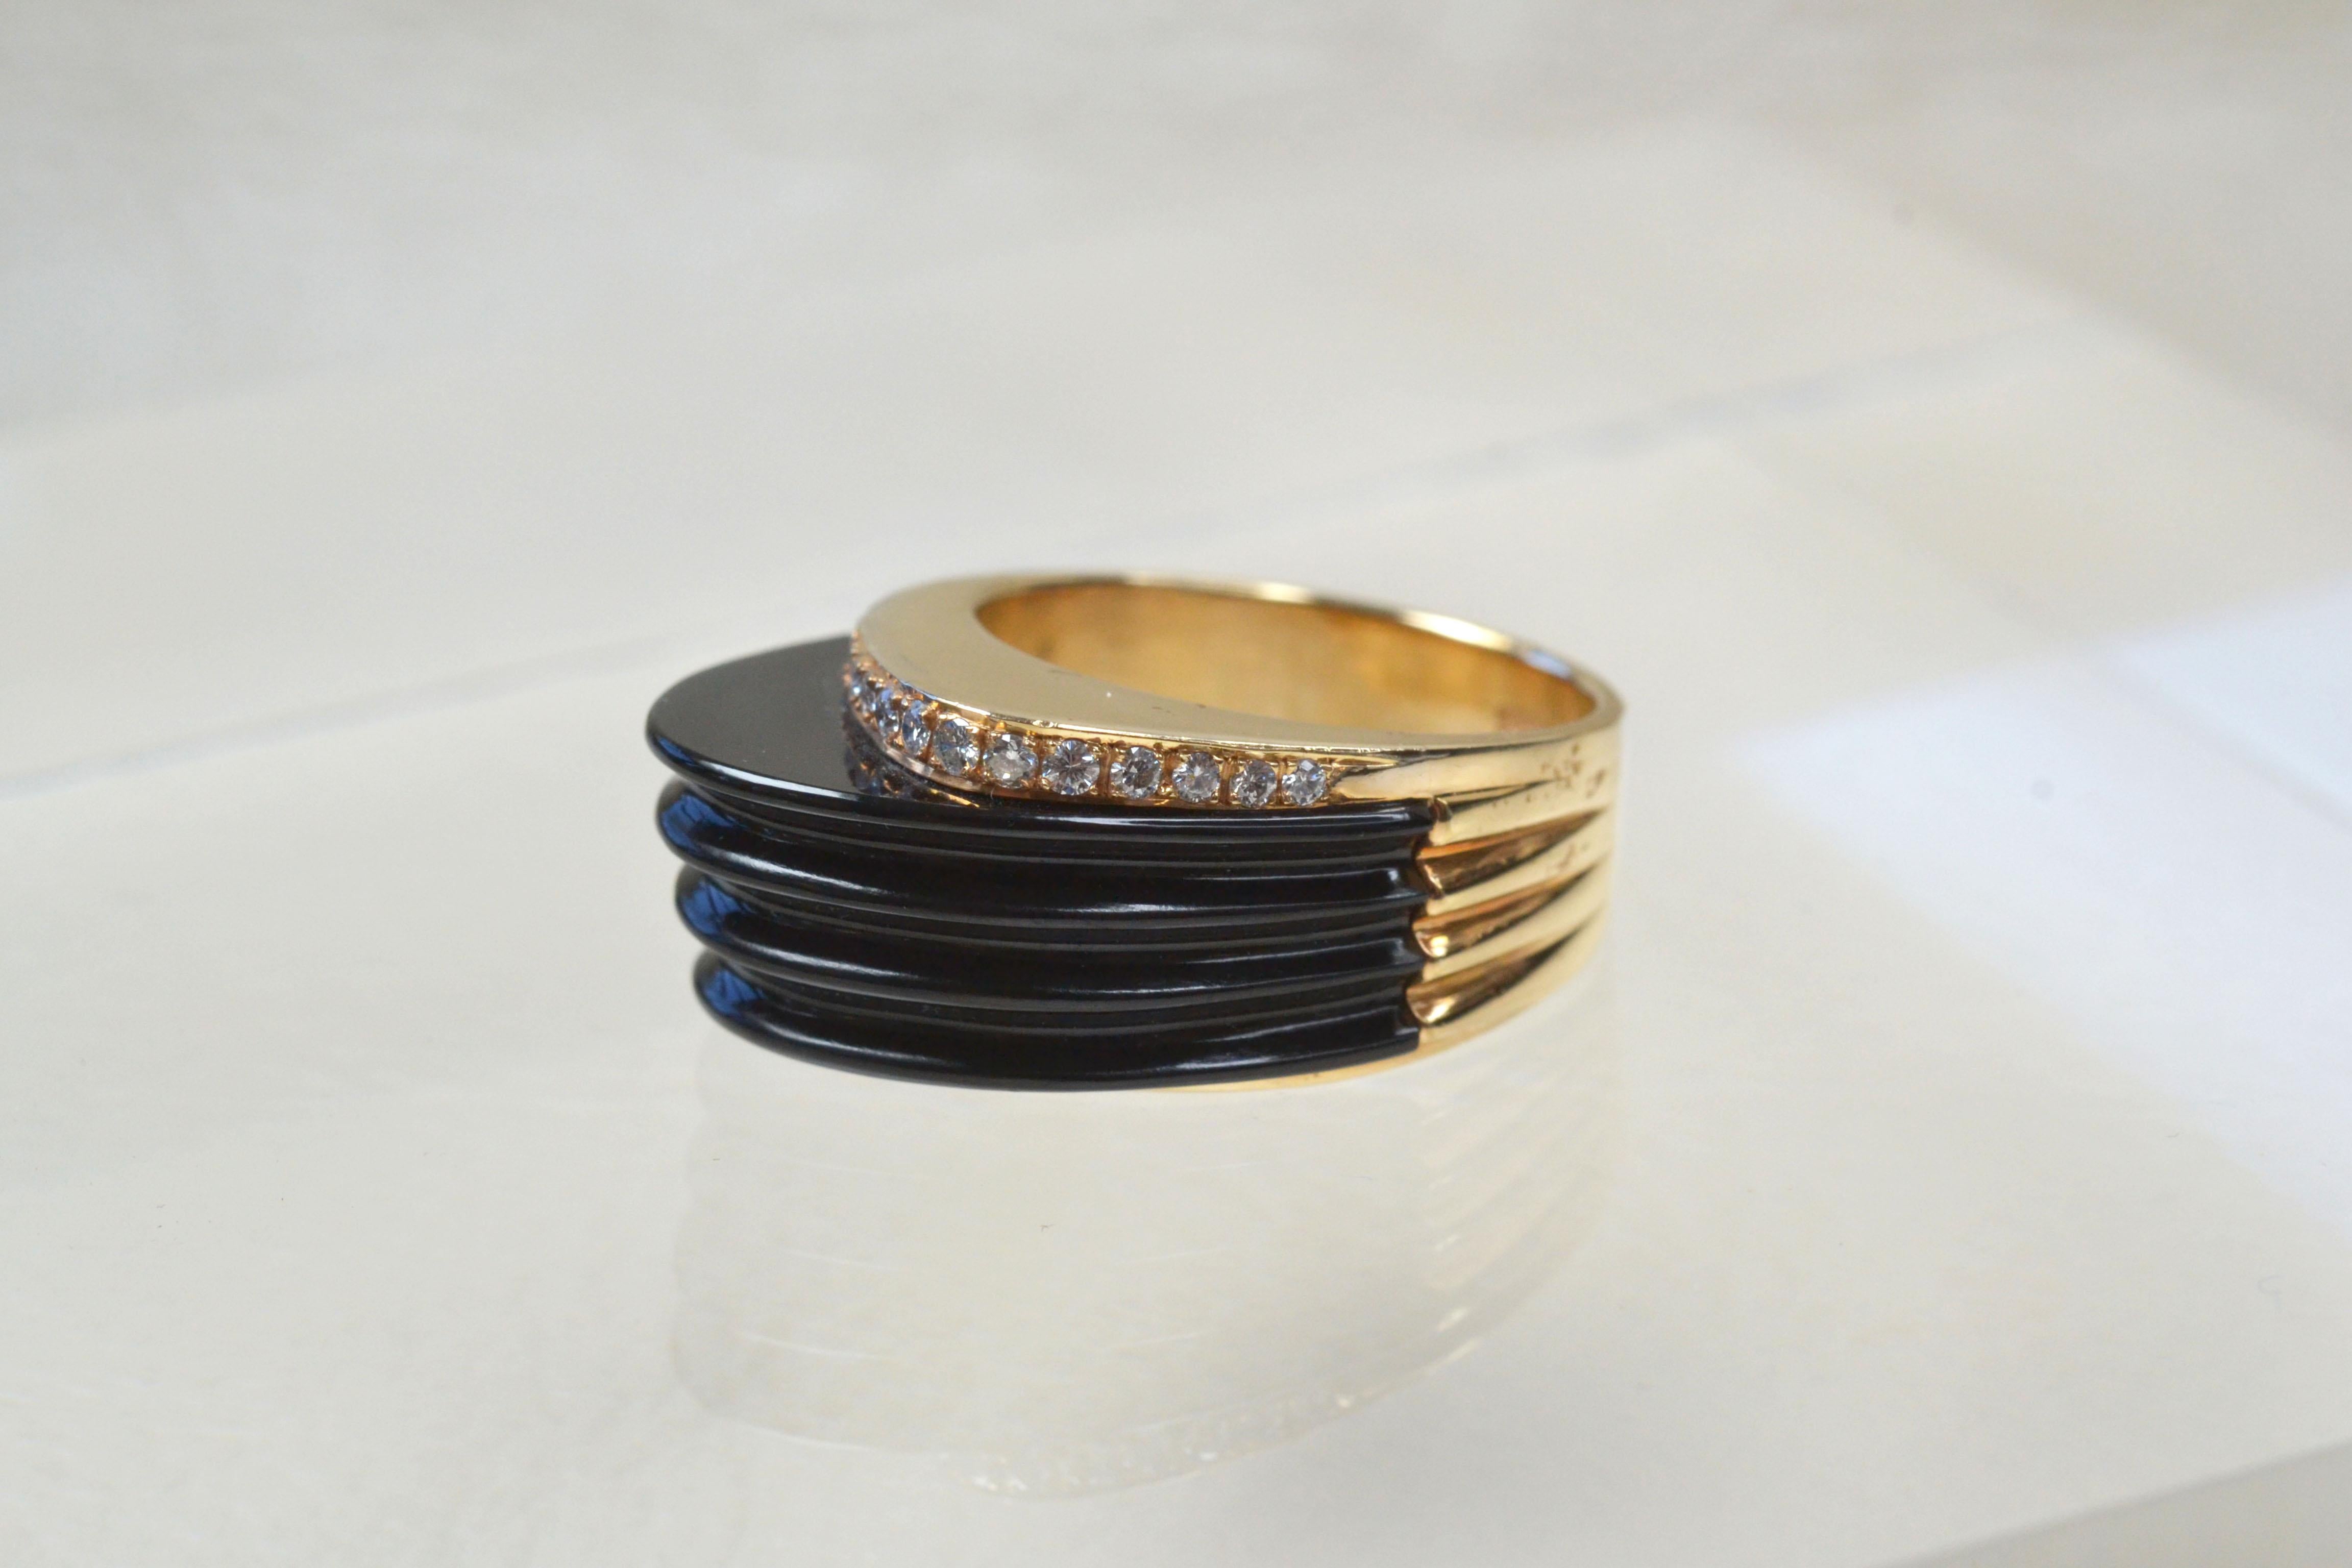 Vintage 14k Ridged Onyx Ring mit Diamanten One-of-a-kind

Dieser 14-karätige Goldring aus den 1980er Jahren ist ein wunderbares Schmuckstück. Der tiefschwarze Onyx und die diamantenen Akzente sind schillernd und dennoch tragbar und dieser Ring passt